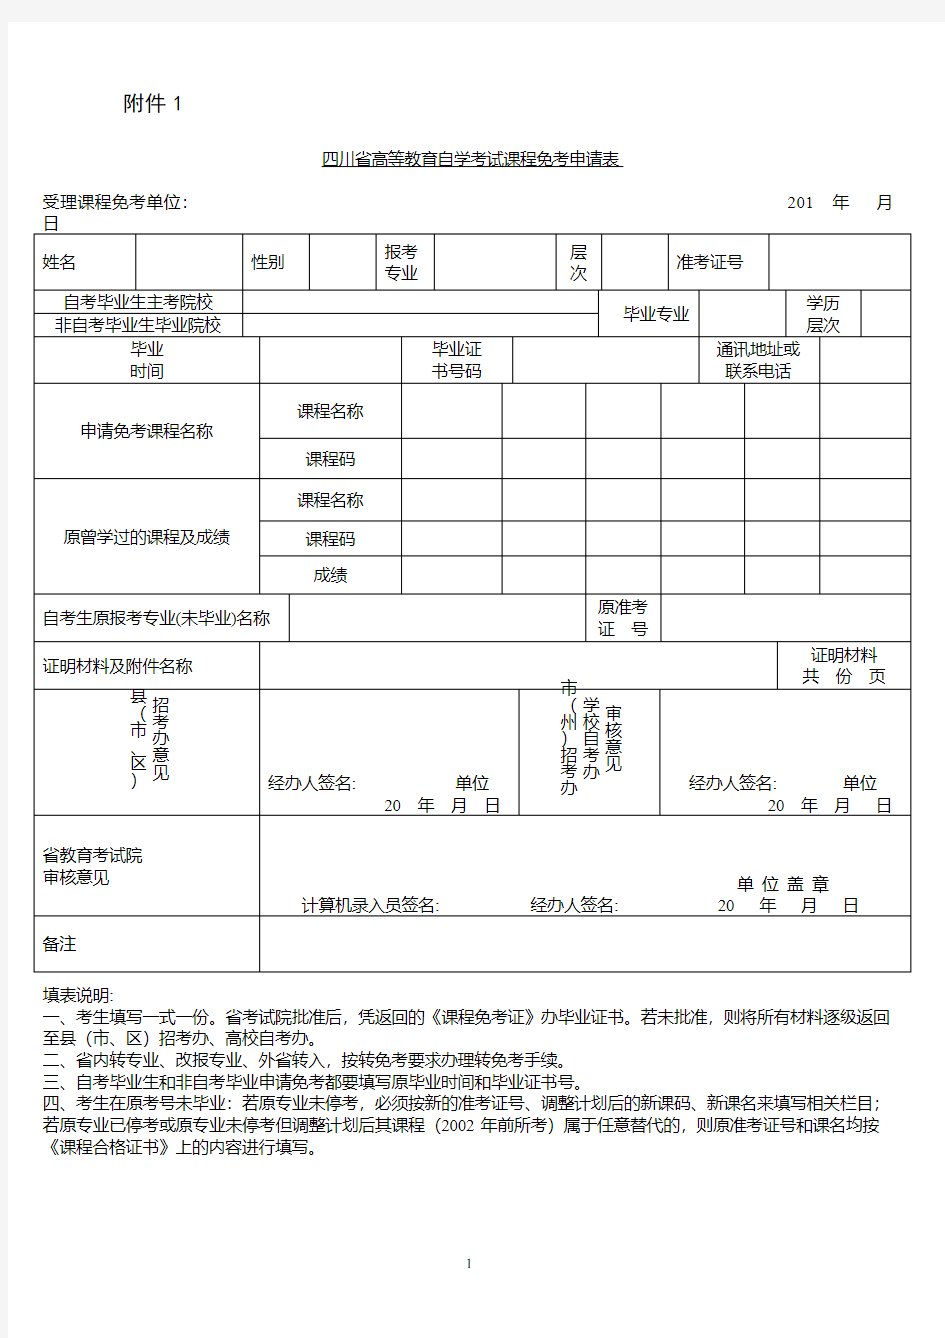 四川省高等教育自学考试课程免考申请表